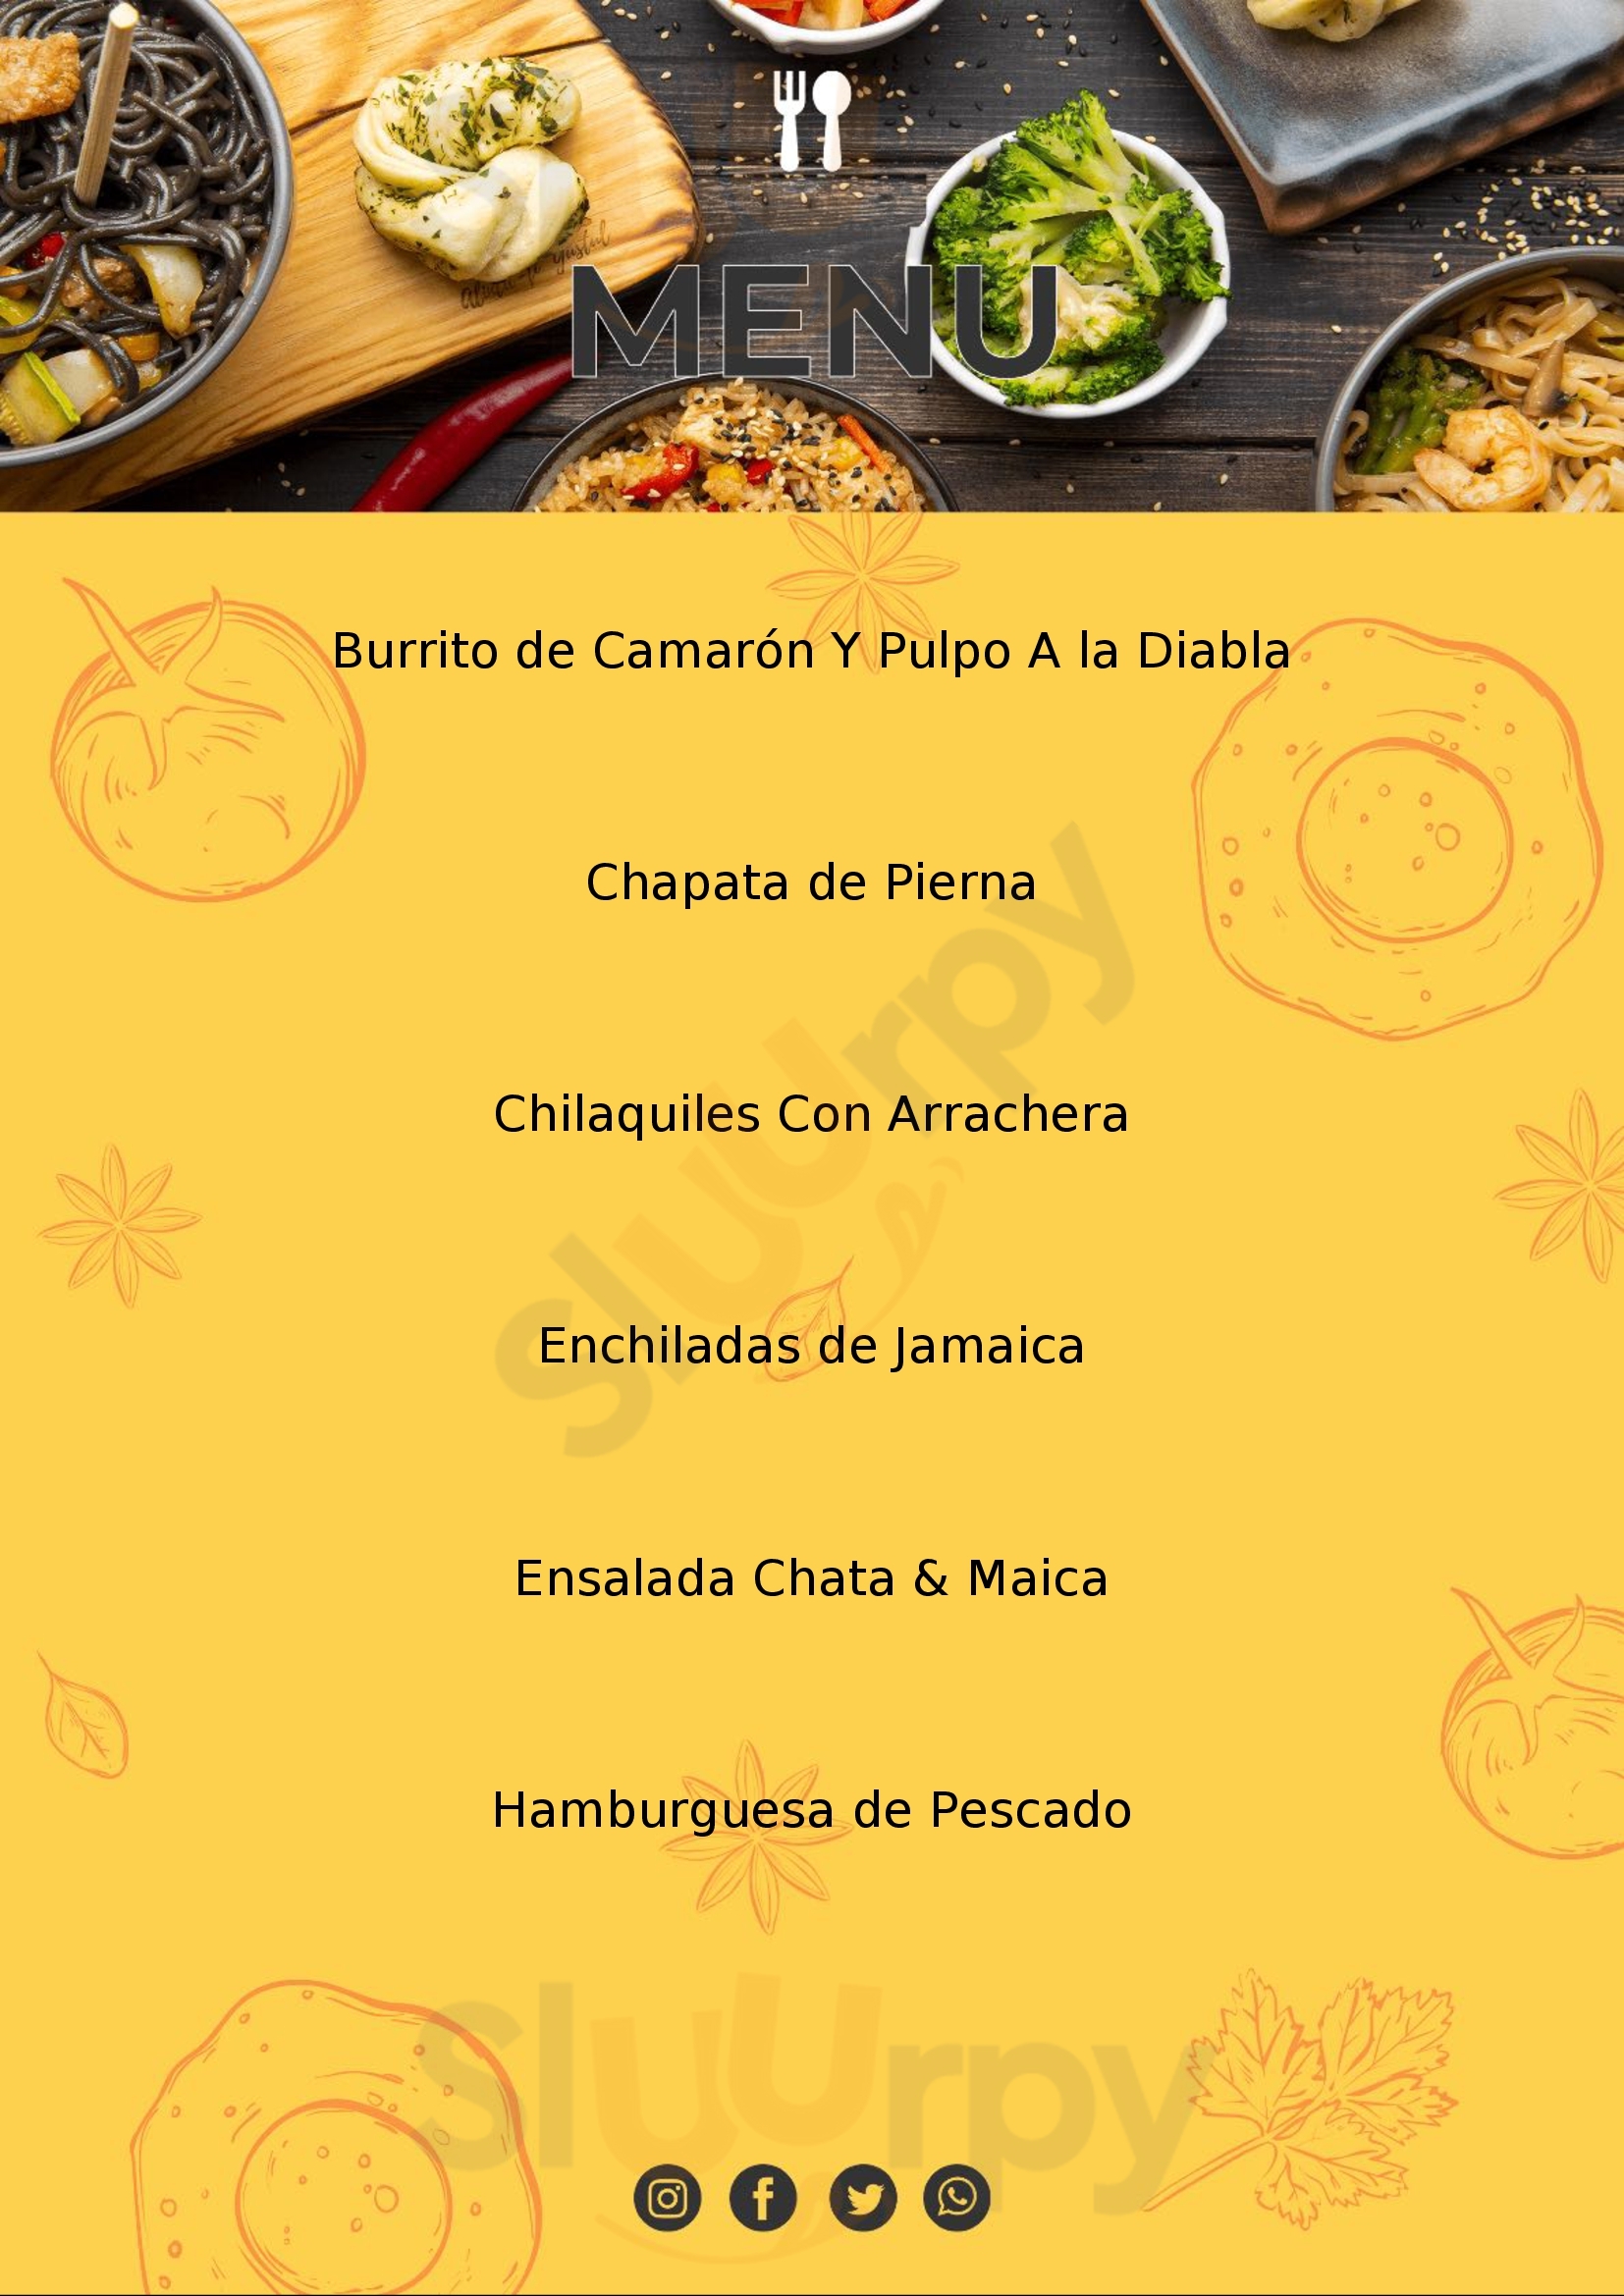 Chata Y Maica, Cocina De Fiesta Puebla Menu - 1